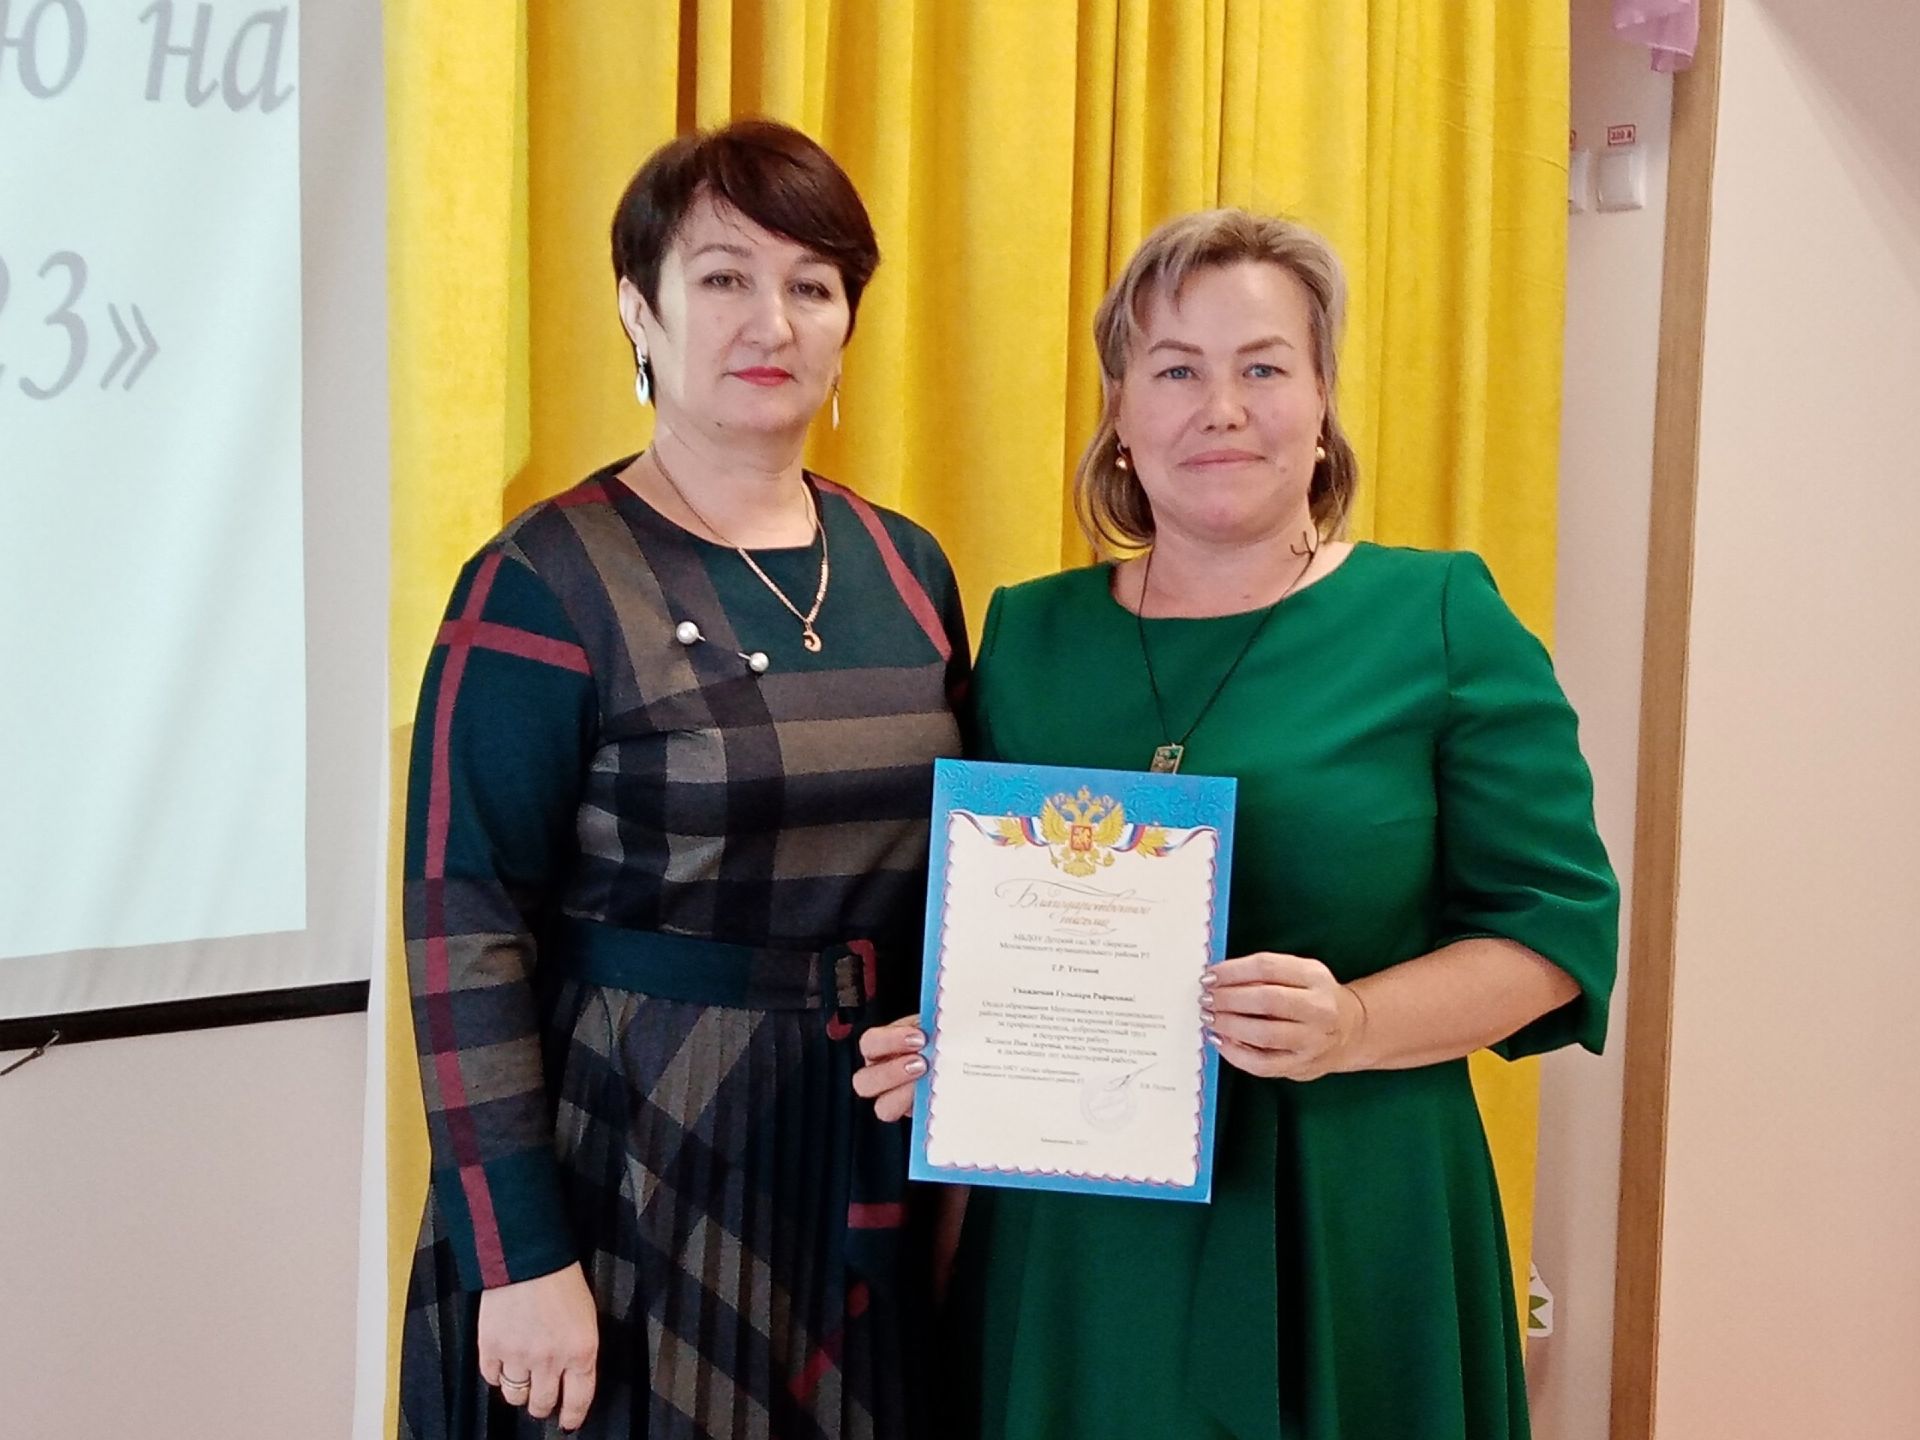 Мензелинские воспитатели  изучают татарский язык и побеждают в конкурсе